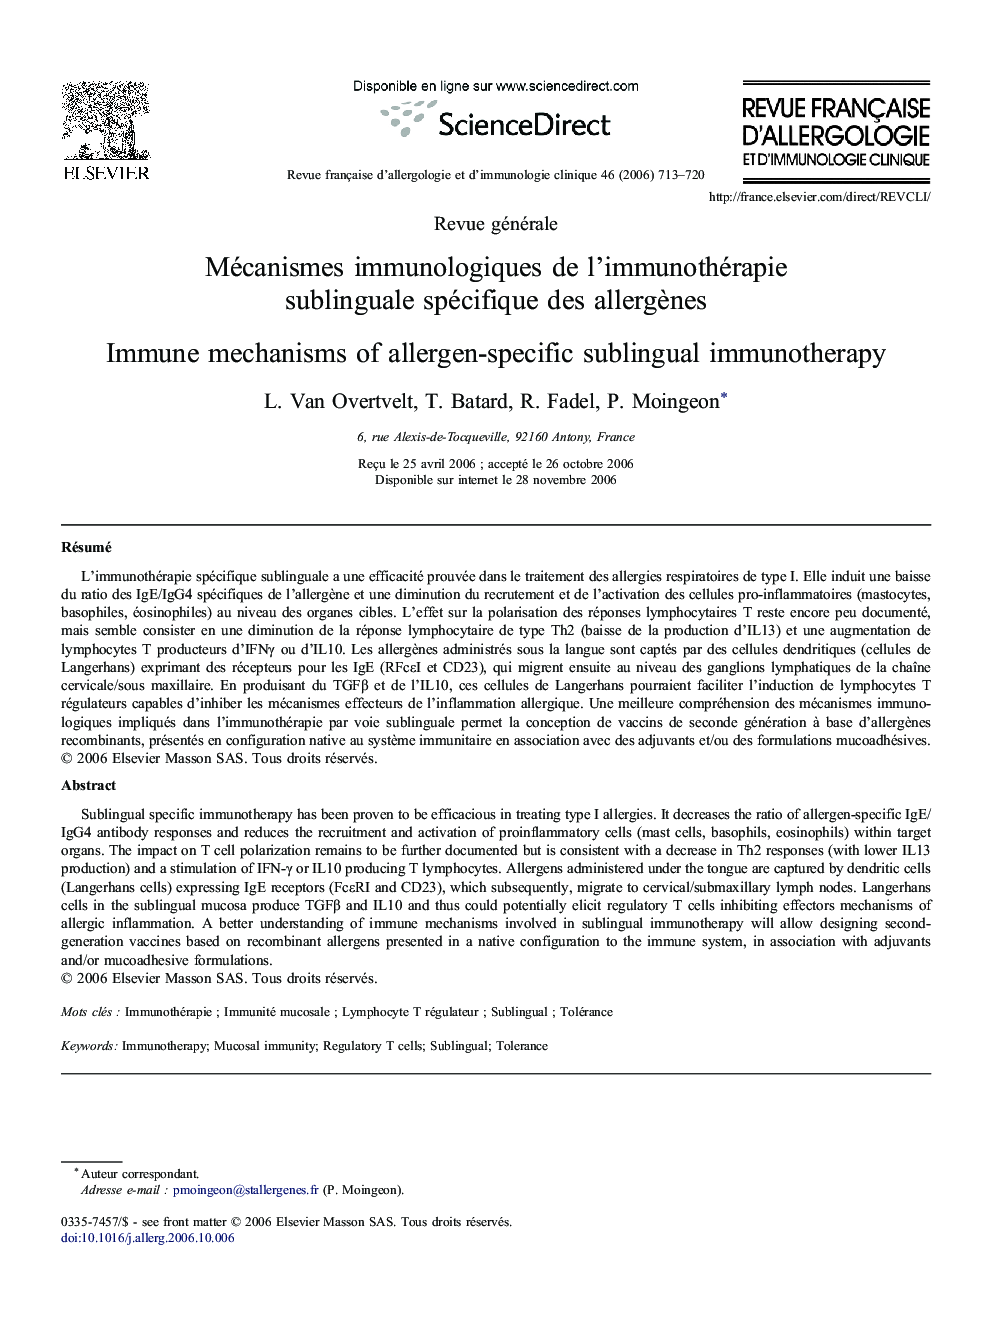 Mécanismes immunologiques de l'immunothérapie sublinguale spécifique des allergènes